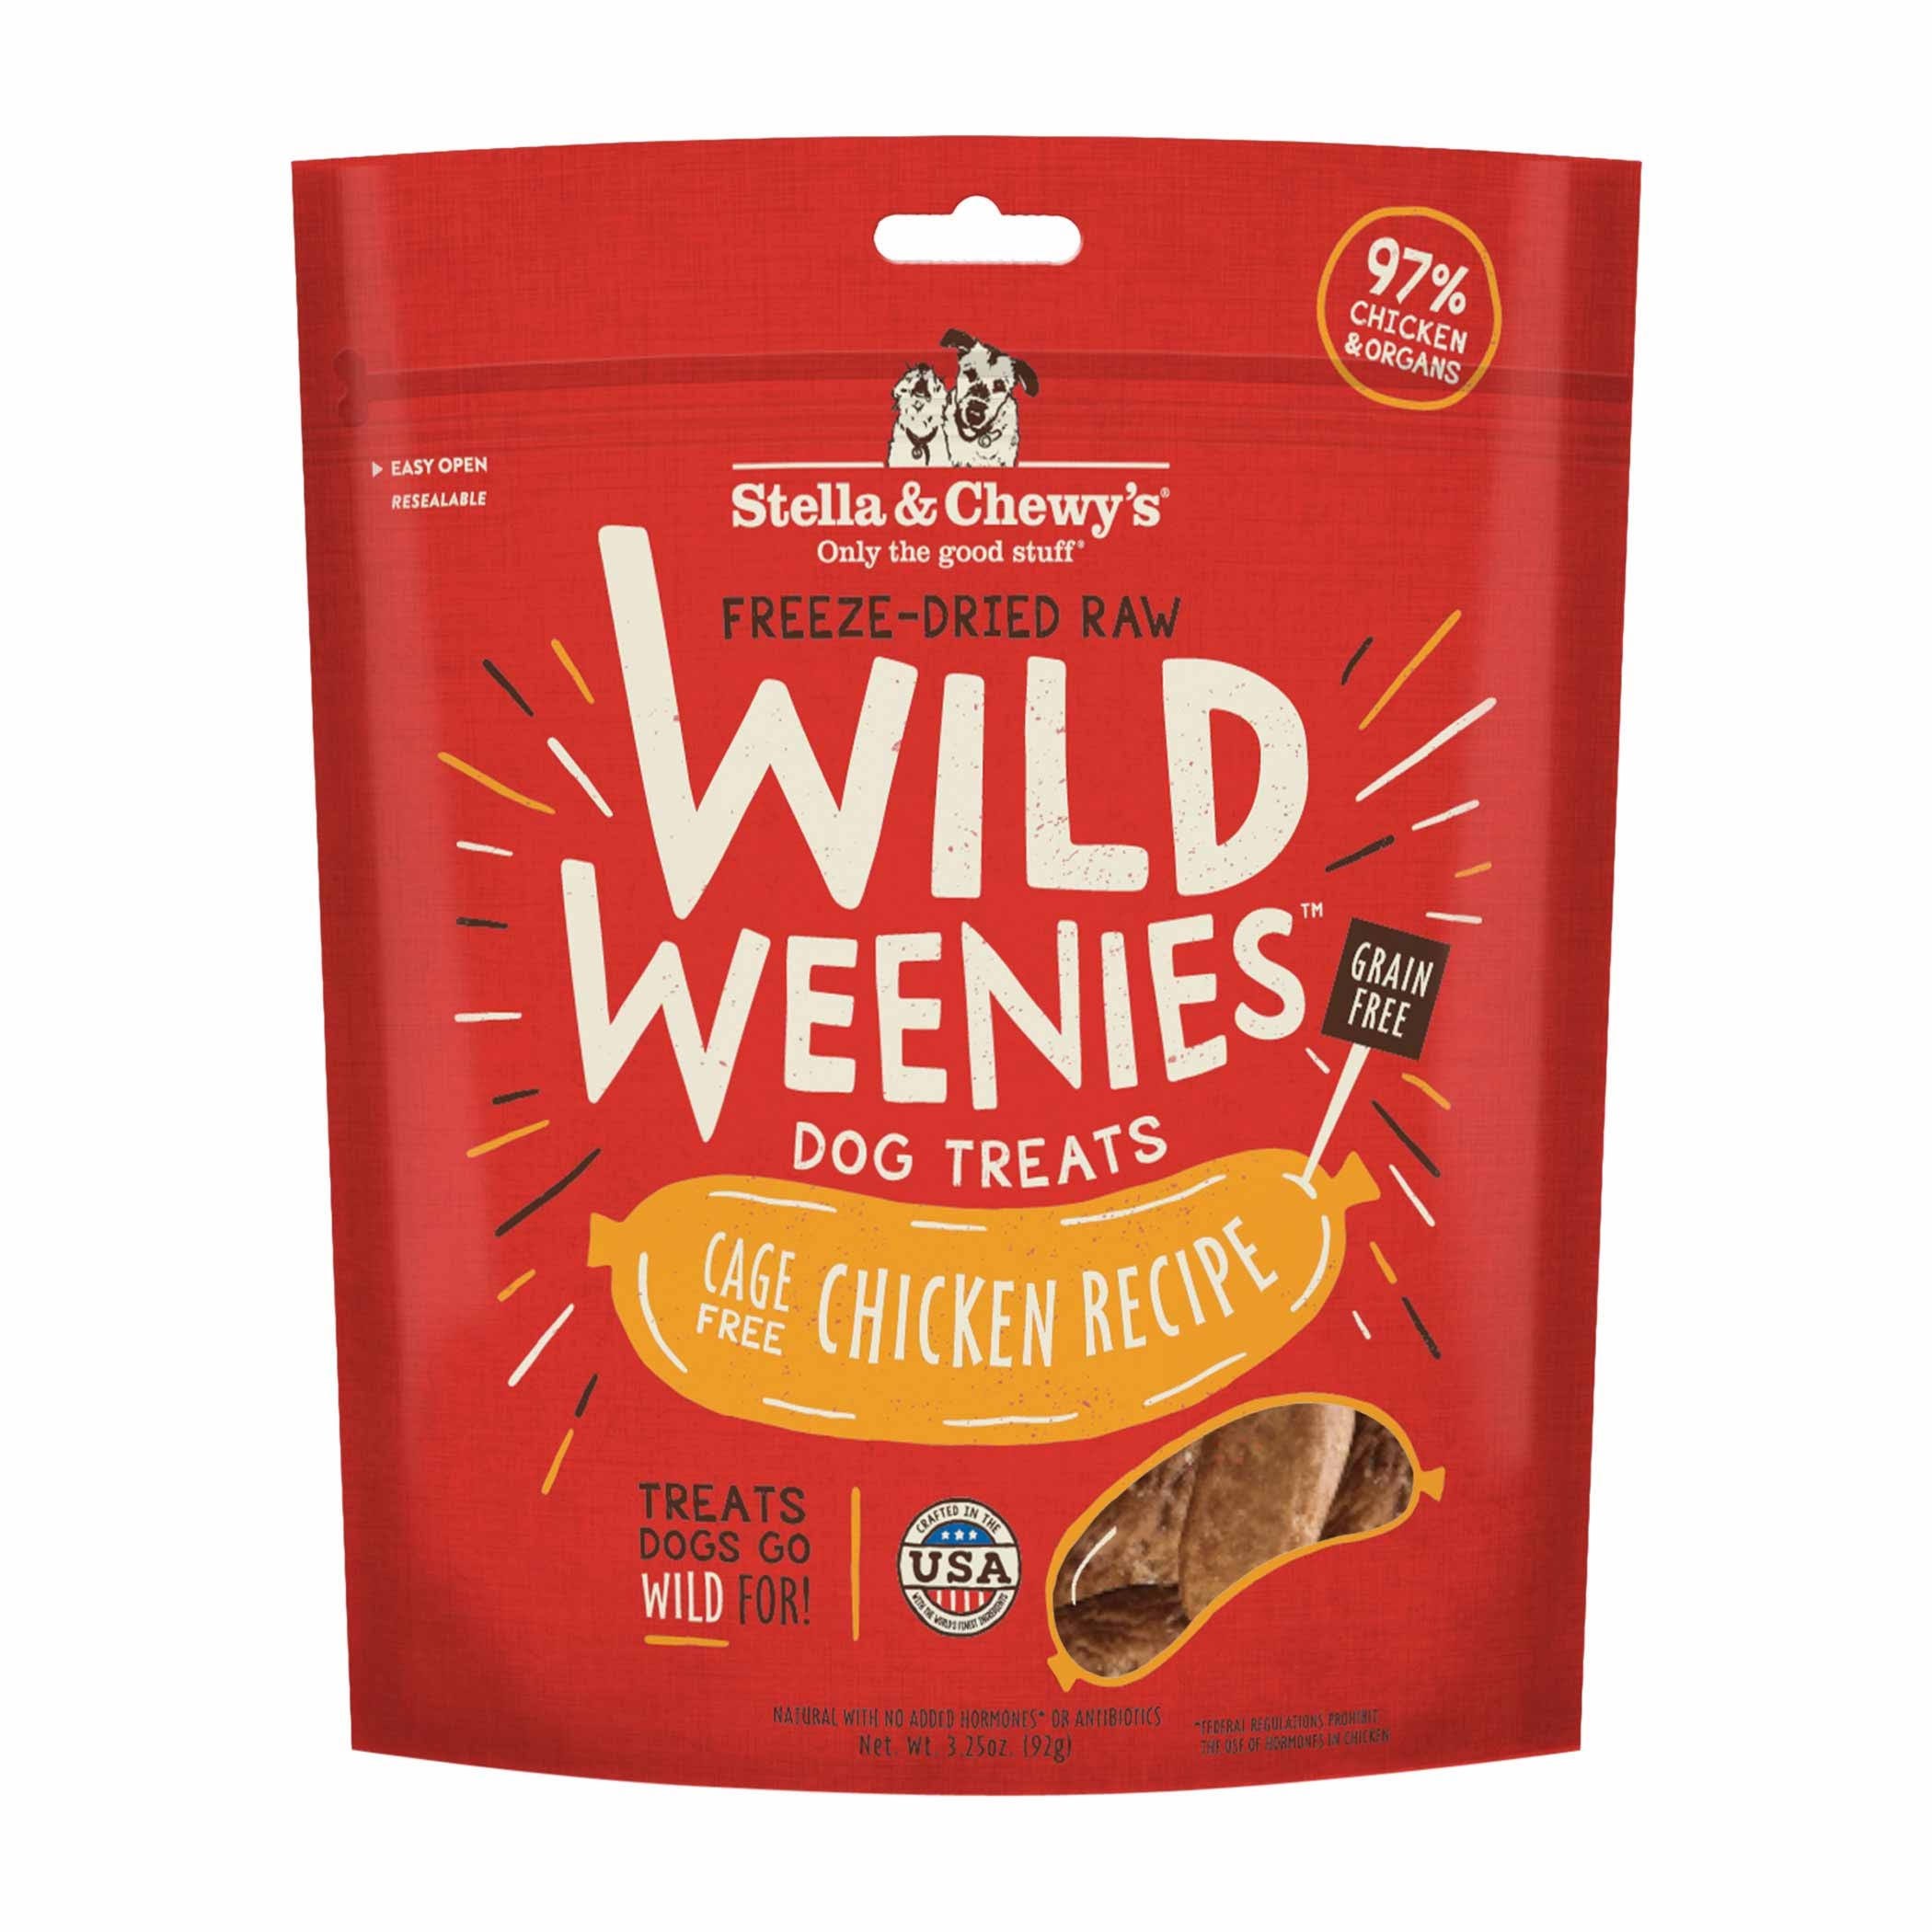 Stella & Chewy's FreezeDried Raw Wild Weenies Dog Treats Chicken Recipe 3.25 oz.